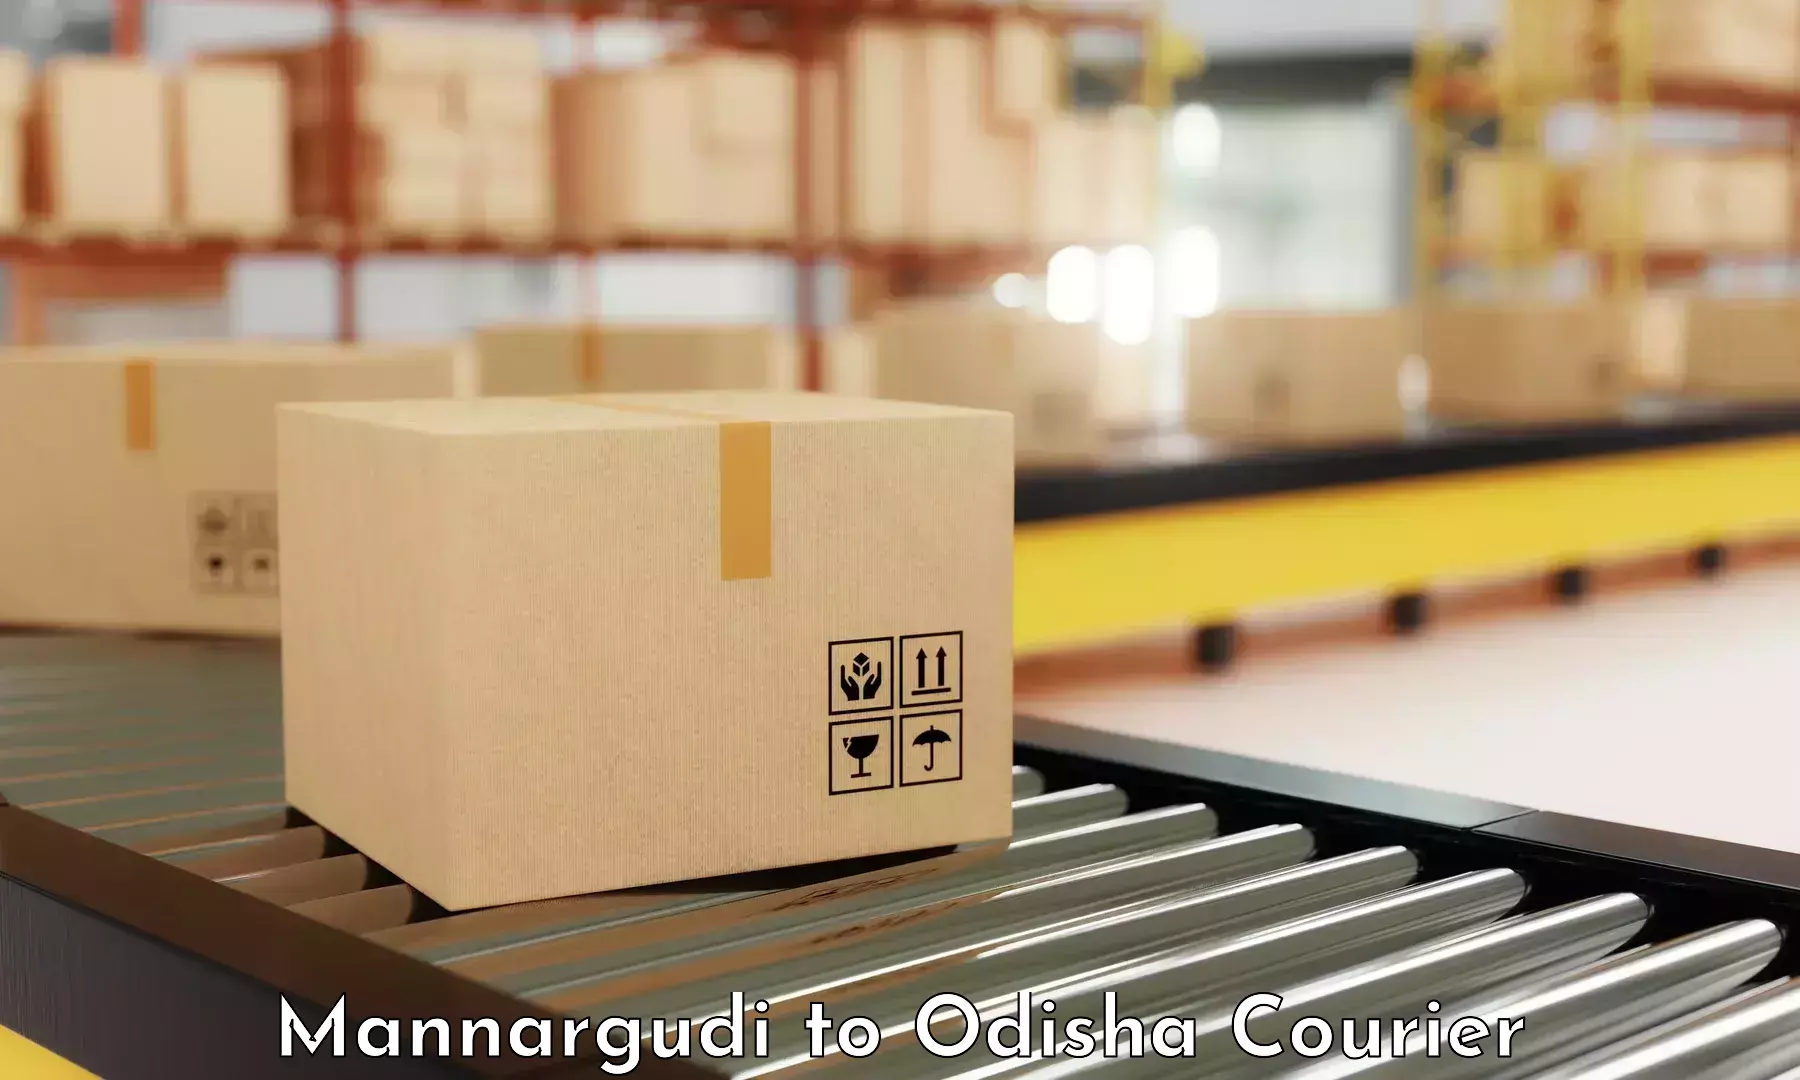 Customer-centric shipping Mannargudi to Duburi